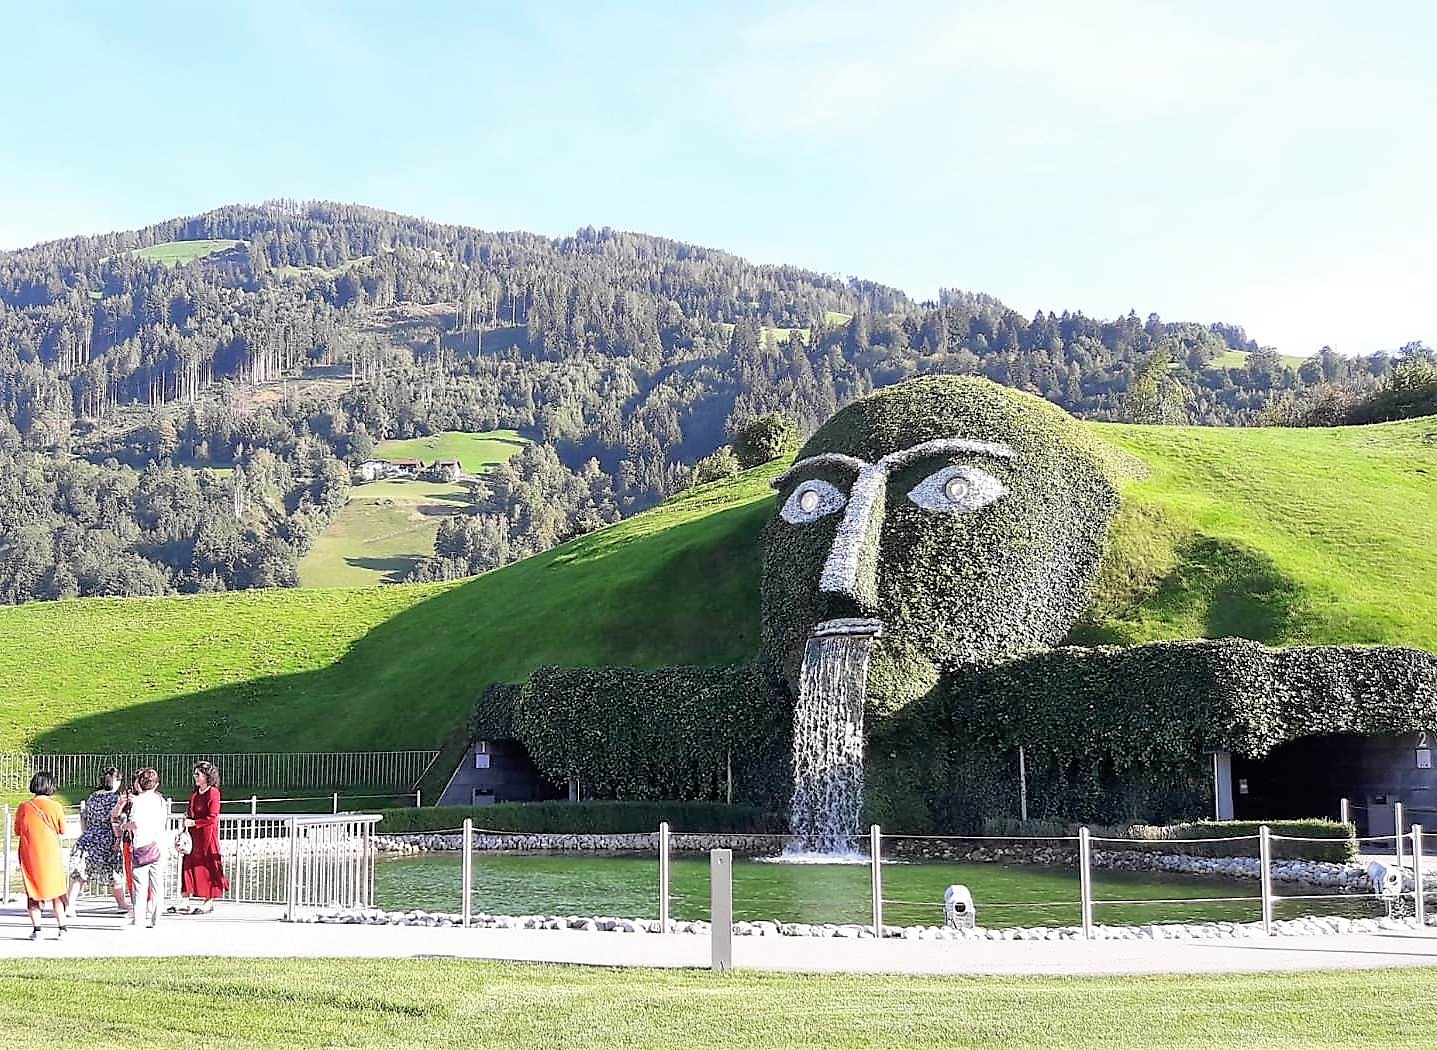 Eingang der vielbesuchten Swarovski Kristallwelten in Wattens/Tirol. Der vom Multimediakünstler André Heller geschaffene Riese "wacht" seit 1995 über die dort gezeigten funkelnden Wunder.

